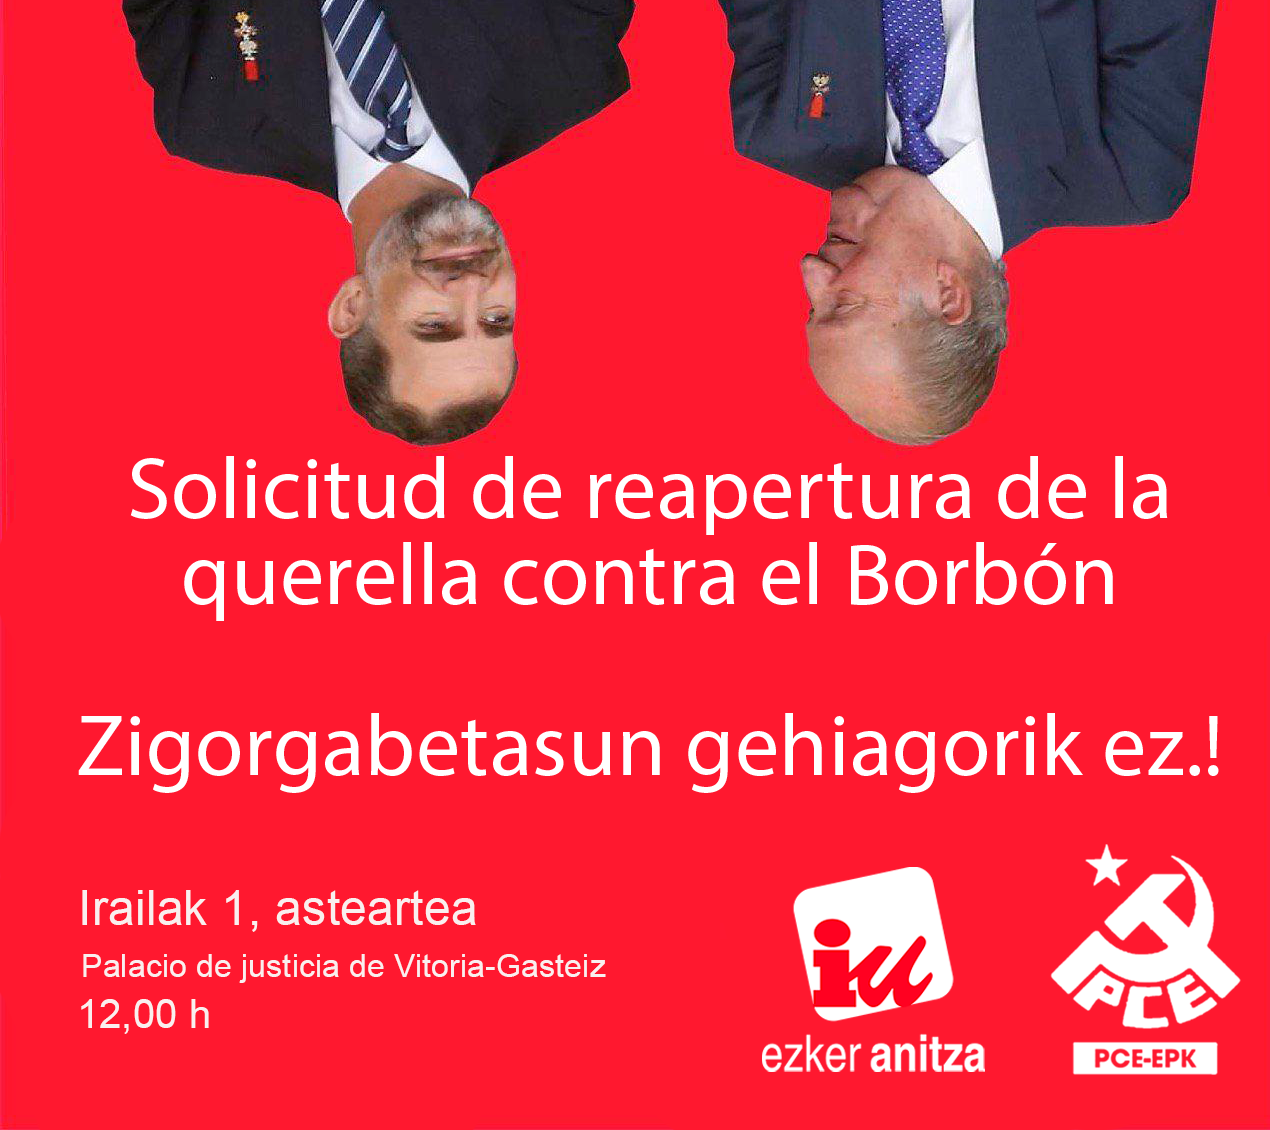 El PCE-EPK junto con Ezker Anitza-IU registrará una solicitud de reapertura de la Querella al Borbón en el Palacio de Justicia de Vitoria-Gasteiz..